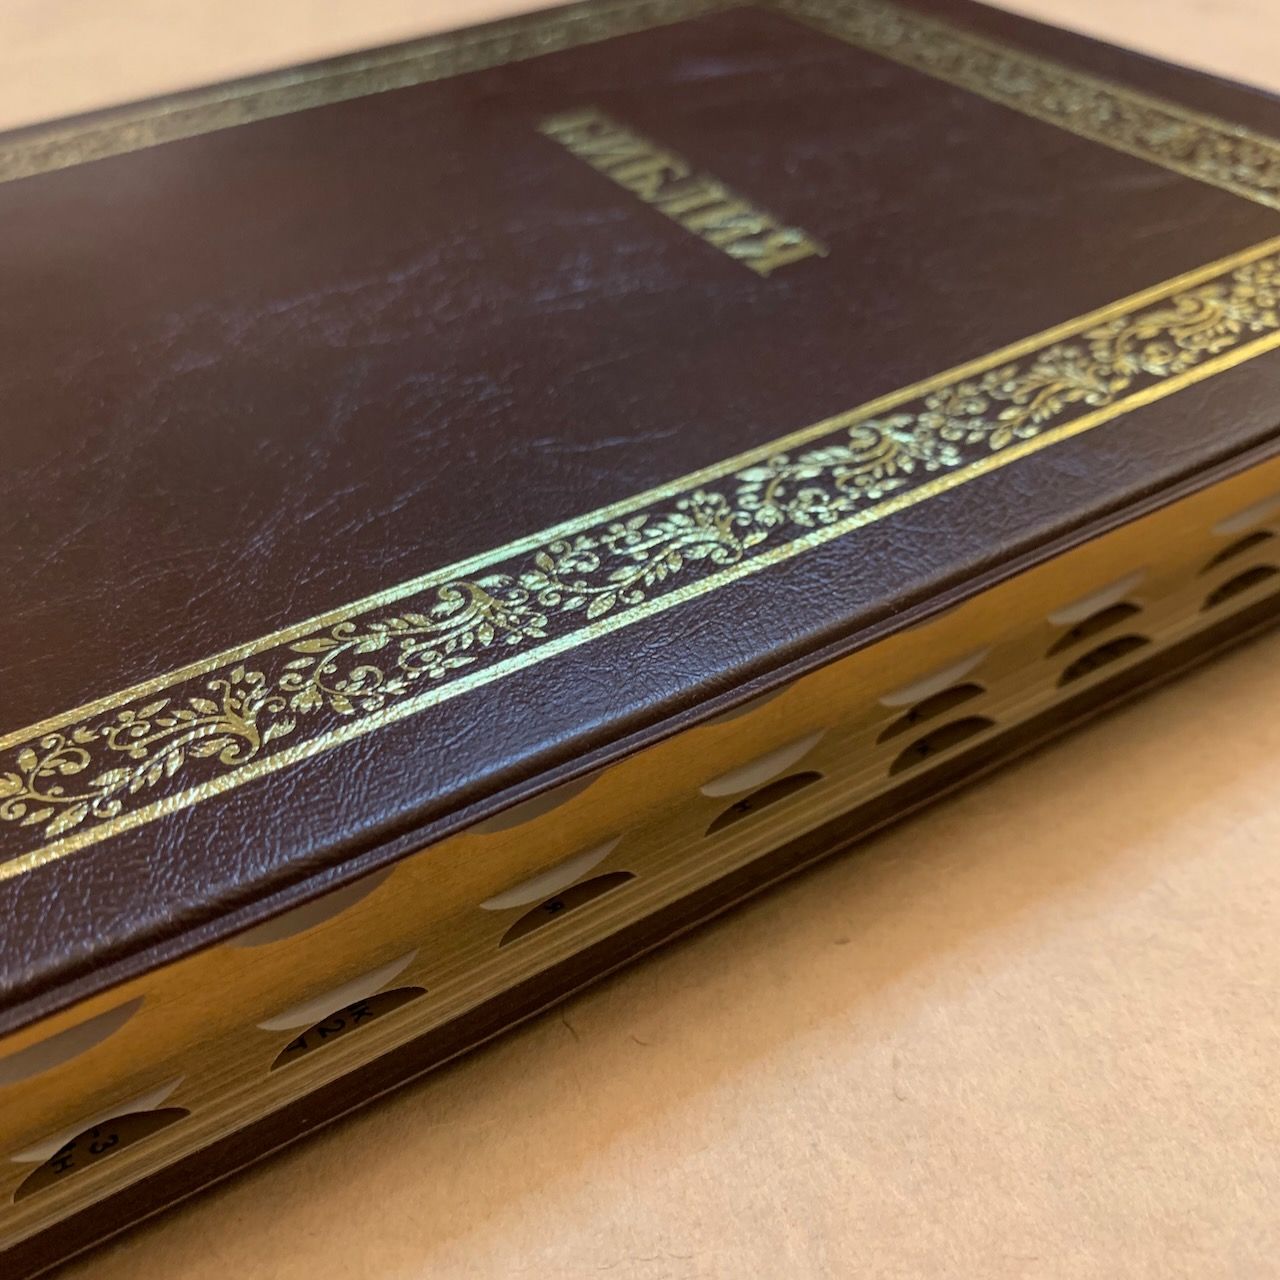 Библия 076TI код A3,  дизайн "золотая рамка растительный орнамент",  цвет темно-коричневый, переплет из искусственной кожи с индексами